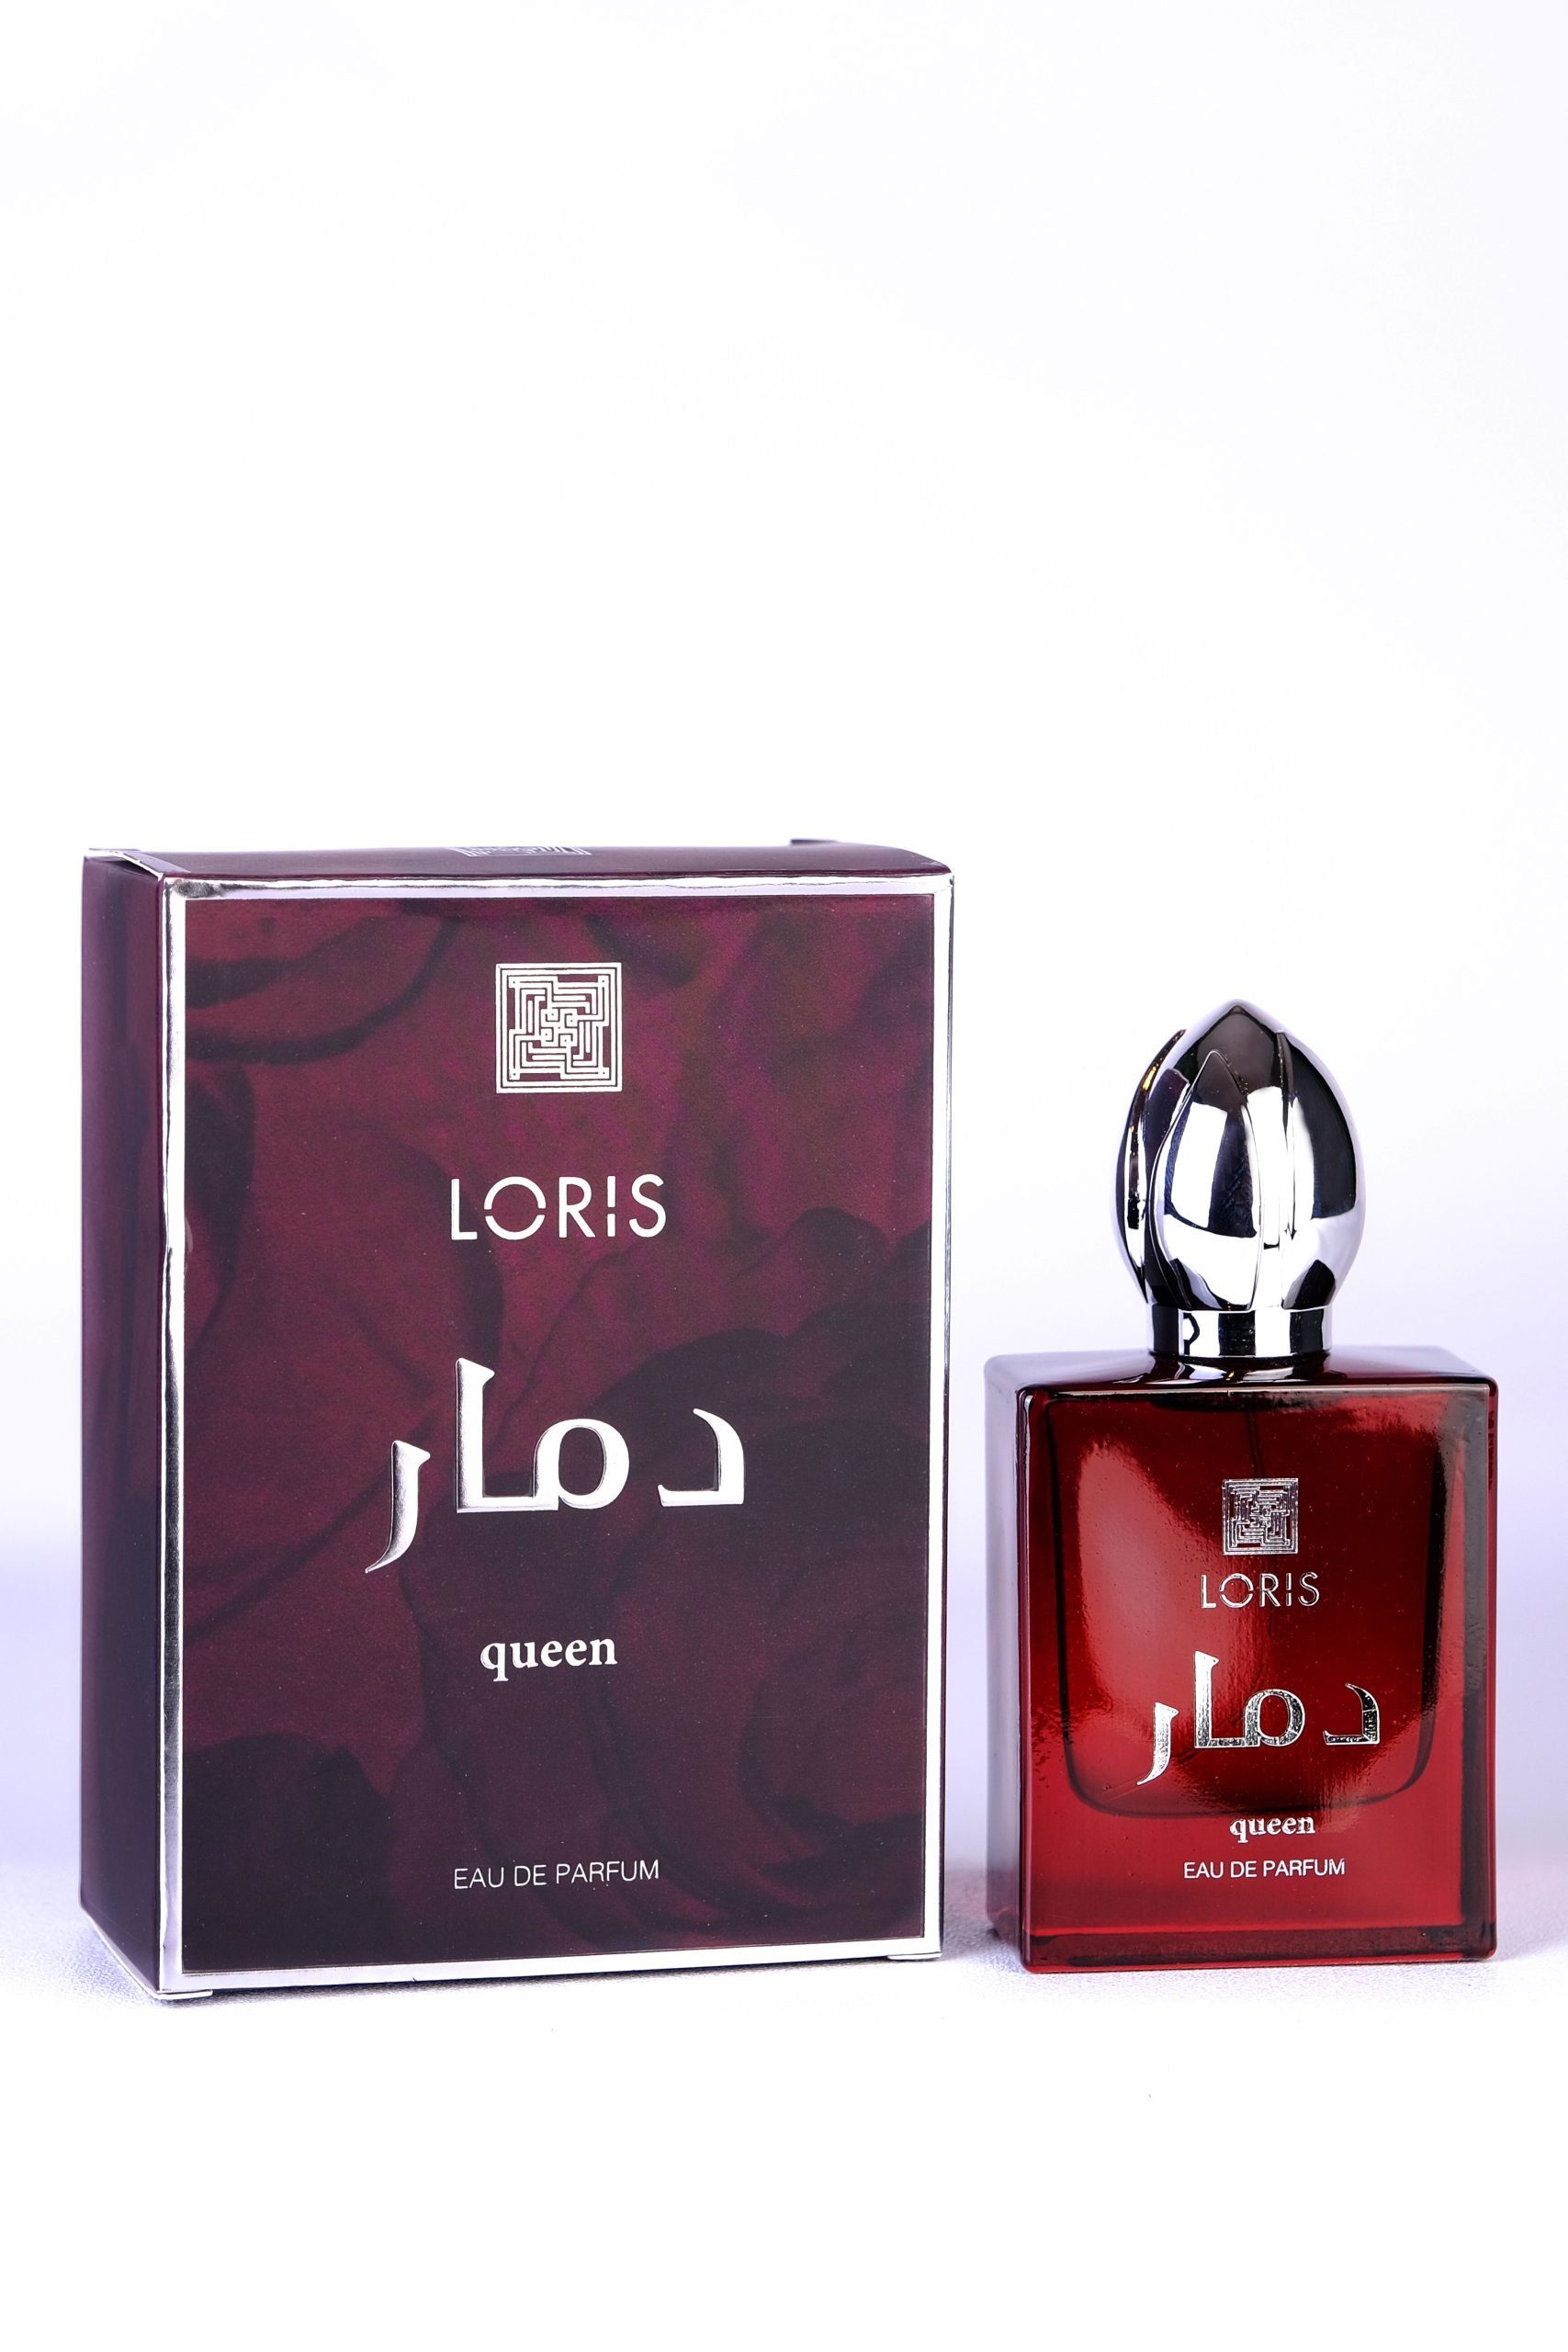 Loris Parfums Eau de Parfum Loris "QUEEN" for women Eau de Parfum Spray 50 ml, Eau de Parfum